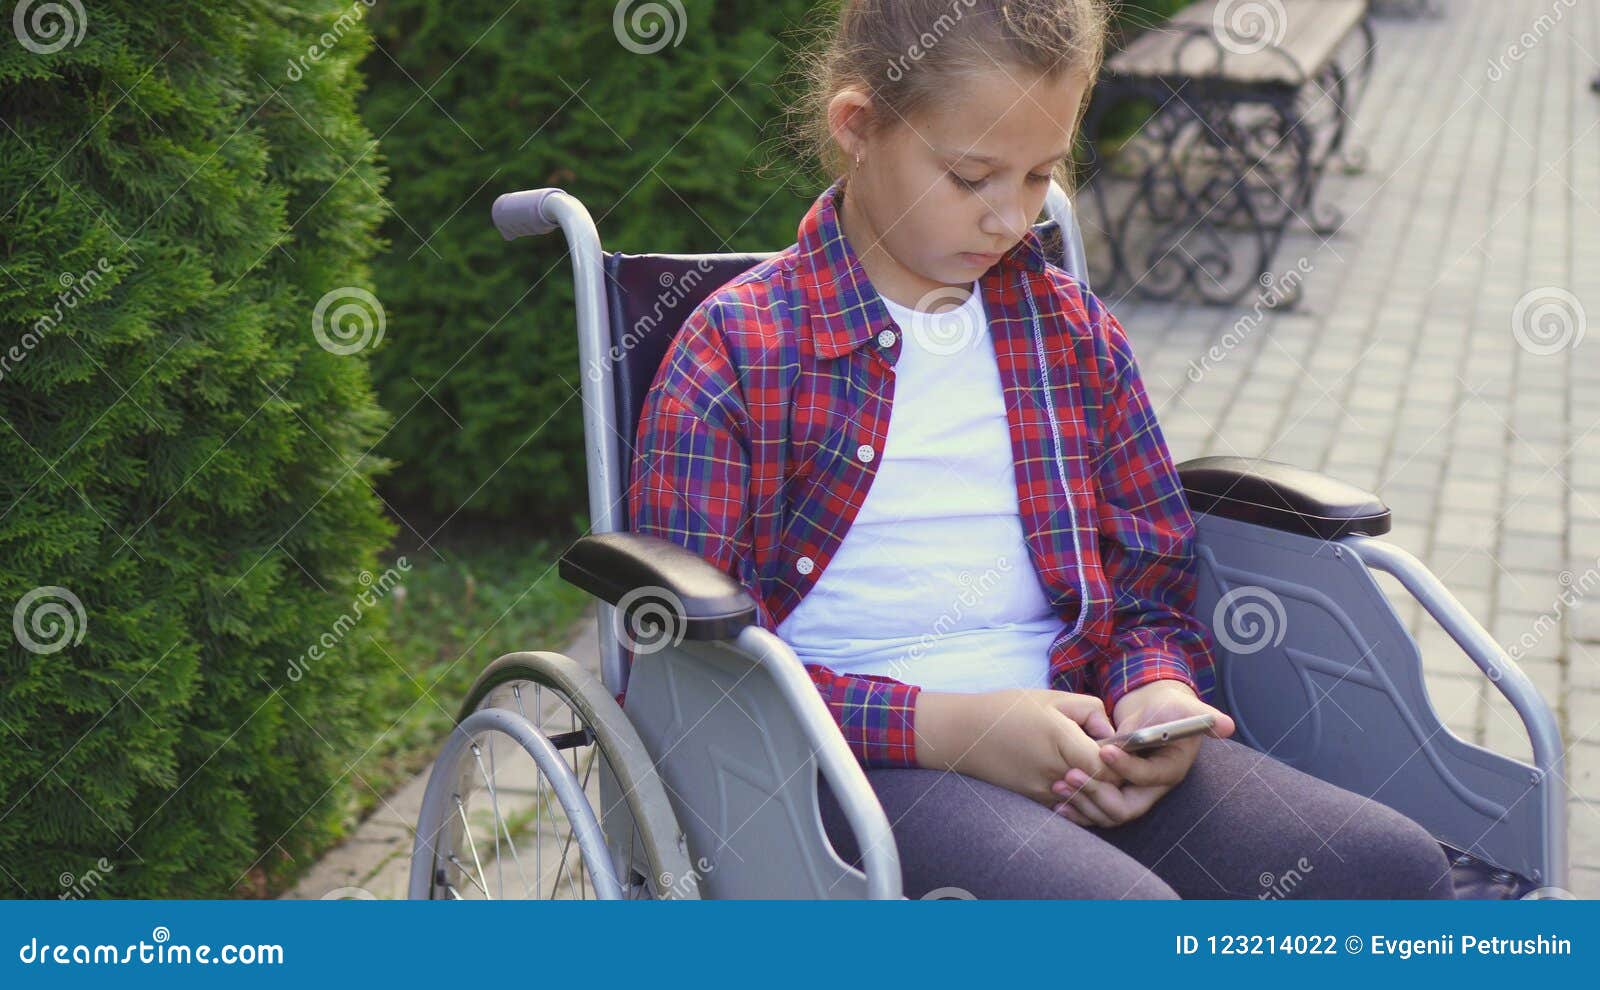 Неработающий инвалид с детства. Ребенок в инвалидном кресле. Девочка инвалид. Девочка сидящая в инвалидной коляске. Подросток в инвалидном кресле.